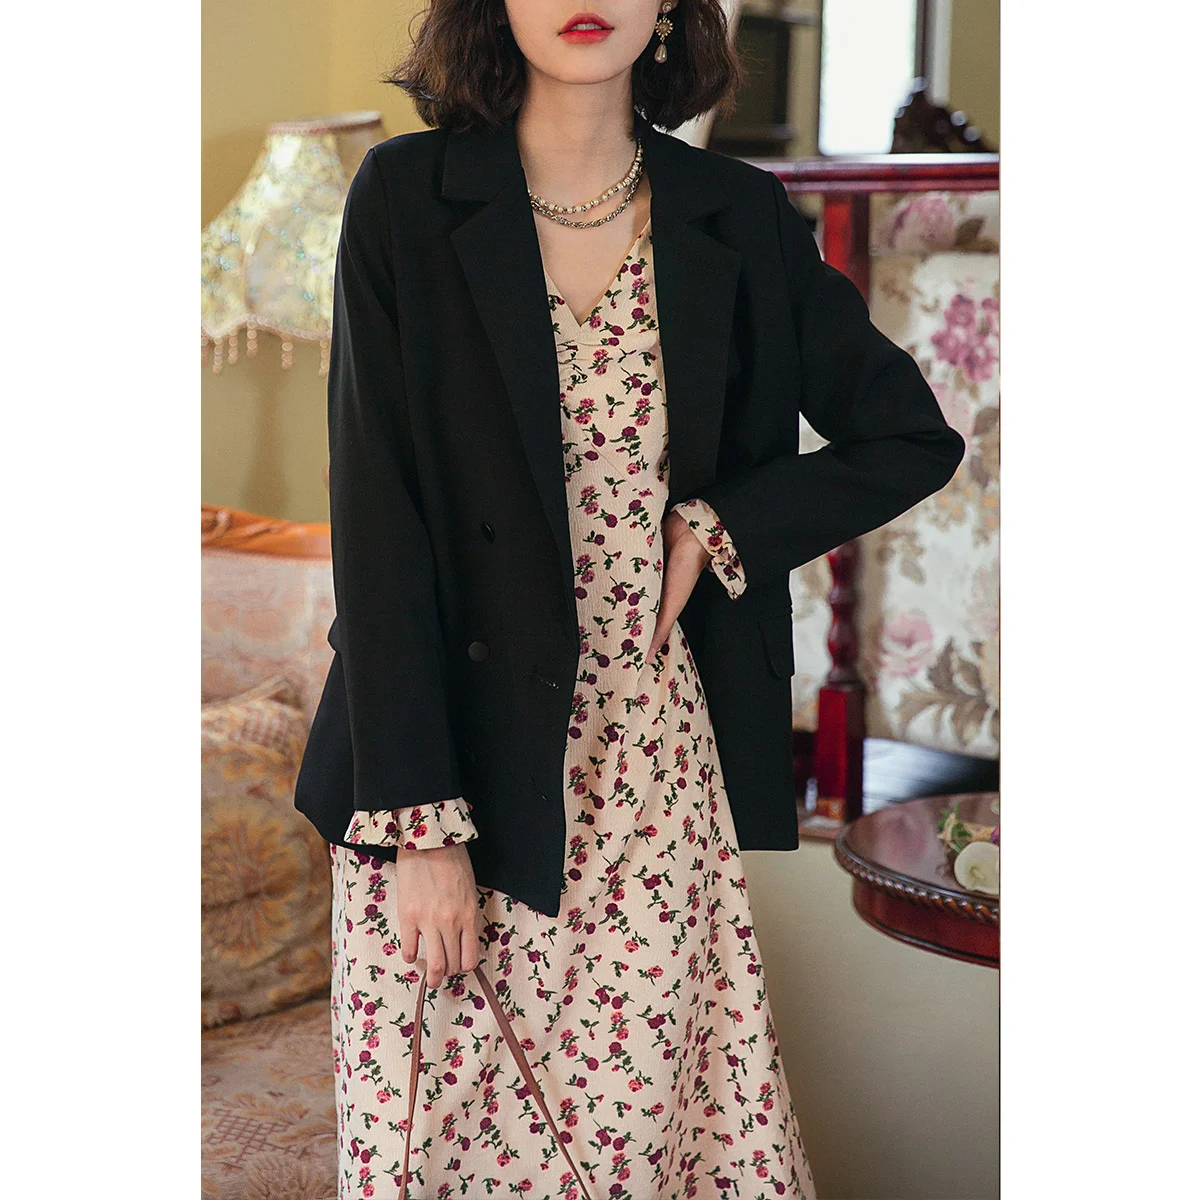 French Rose Dress Long Sleeve Bubble Sleeve V-neck Fragmented Flower Dress Female Spring and Autumn Inner Wear Long Skirt